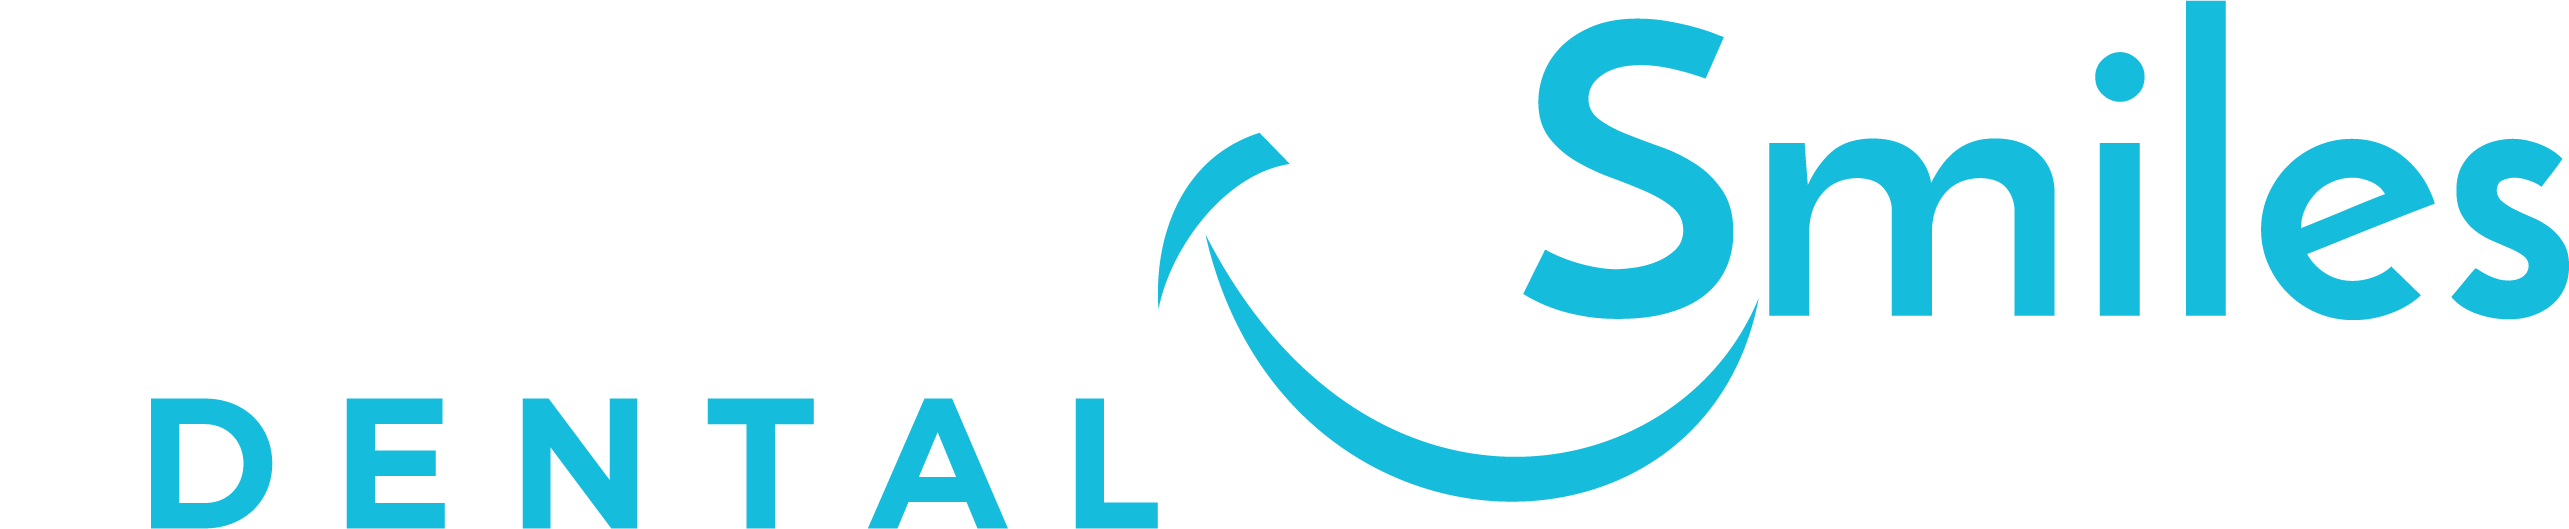 Final Onalaska Smiles logo outdoor1